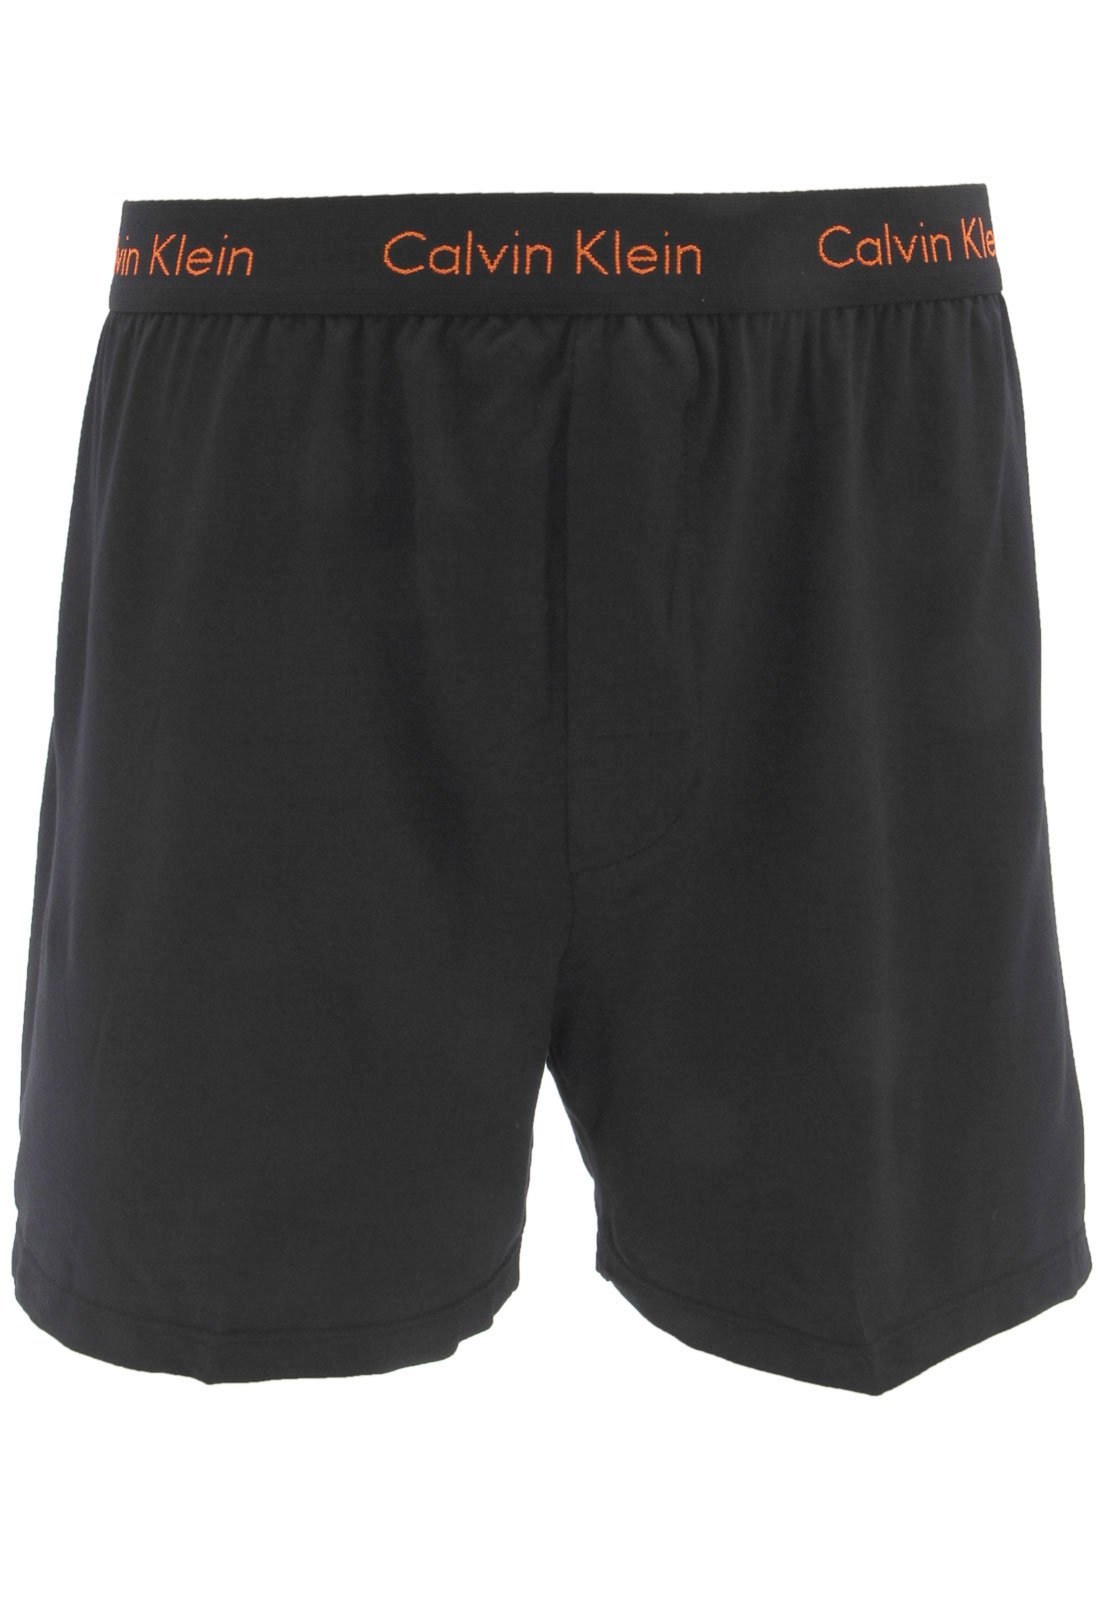 Samba Canção Calvin Klein Underwear Logo Preta Compre Agora Kanui